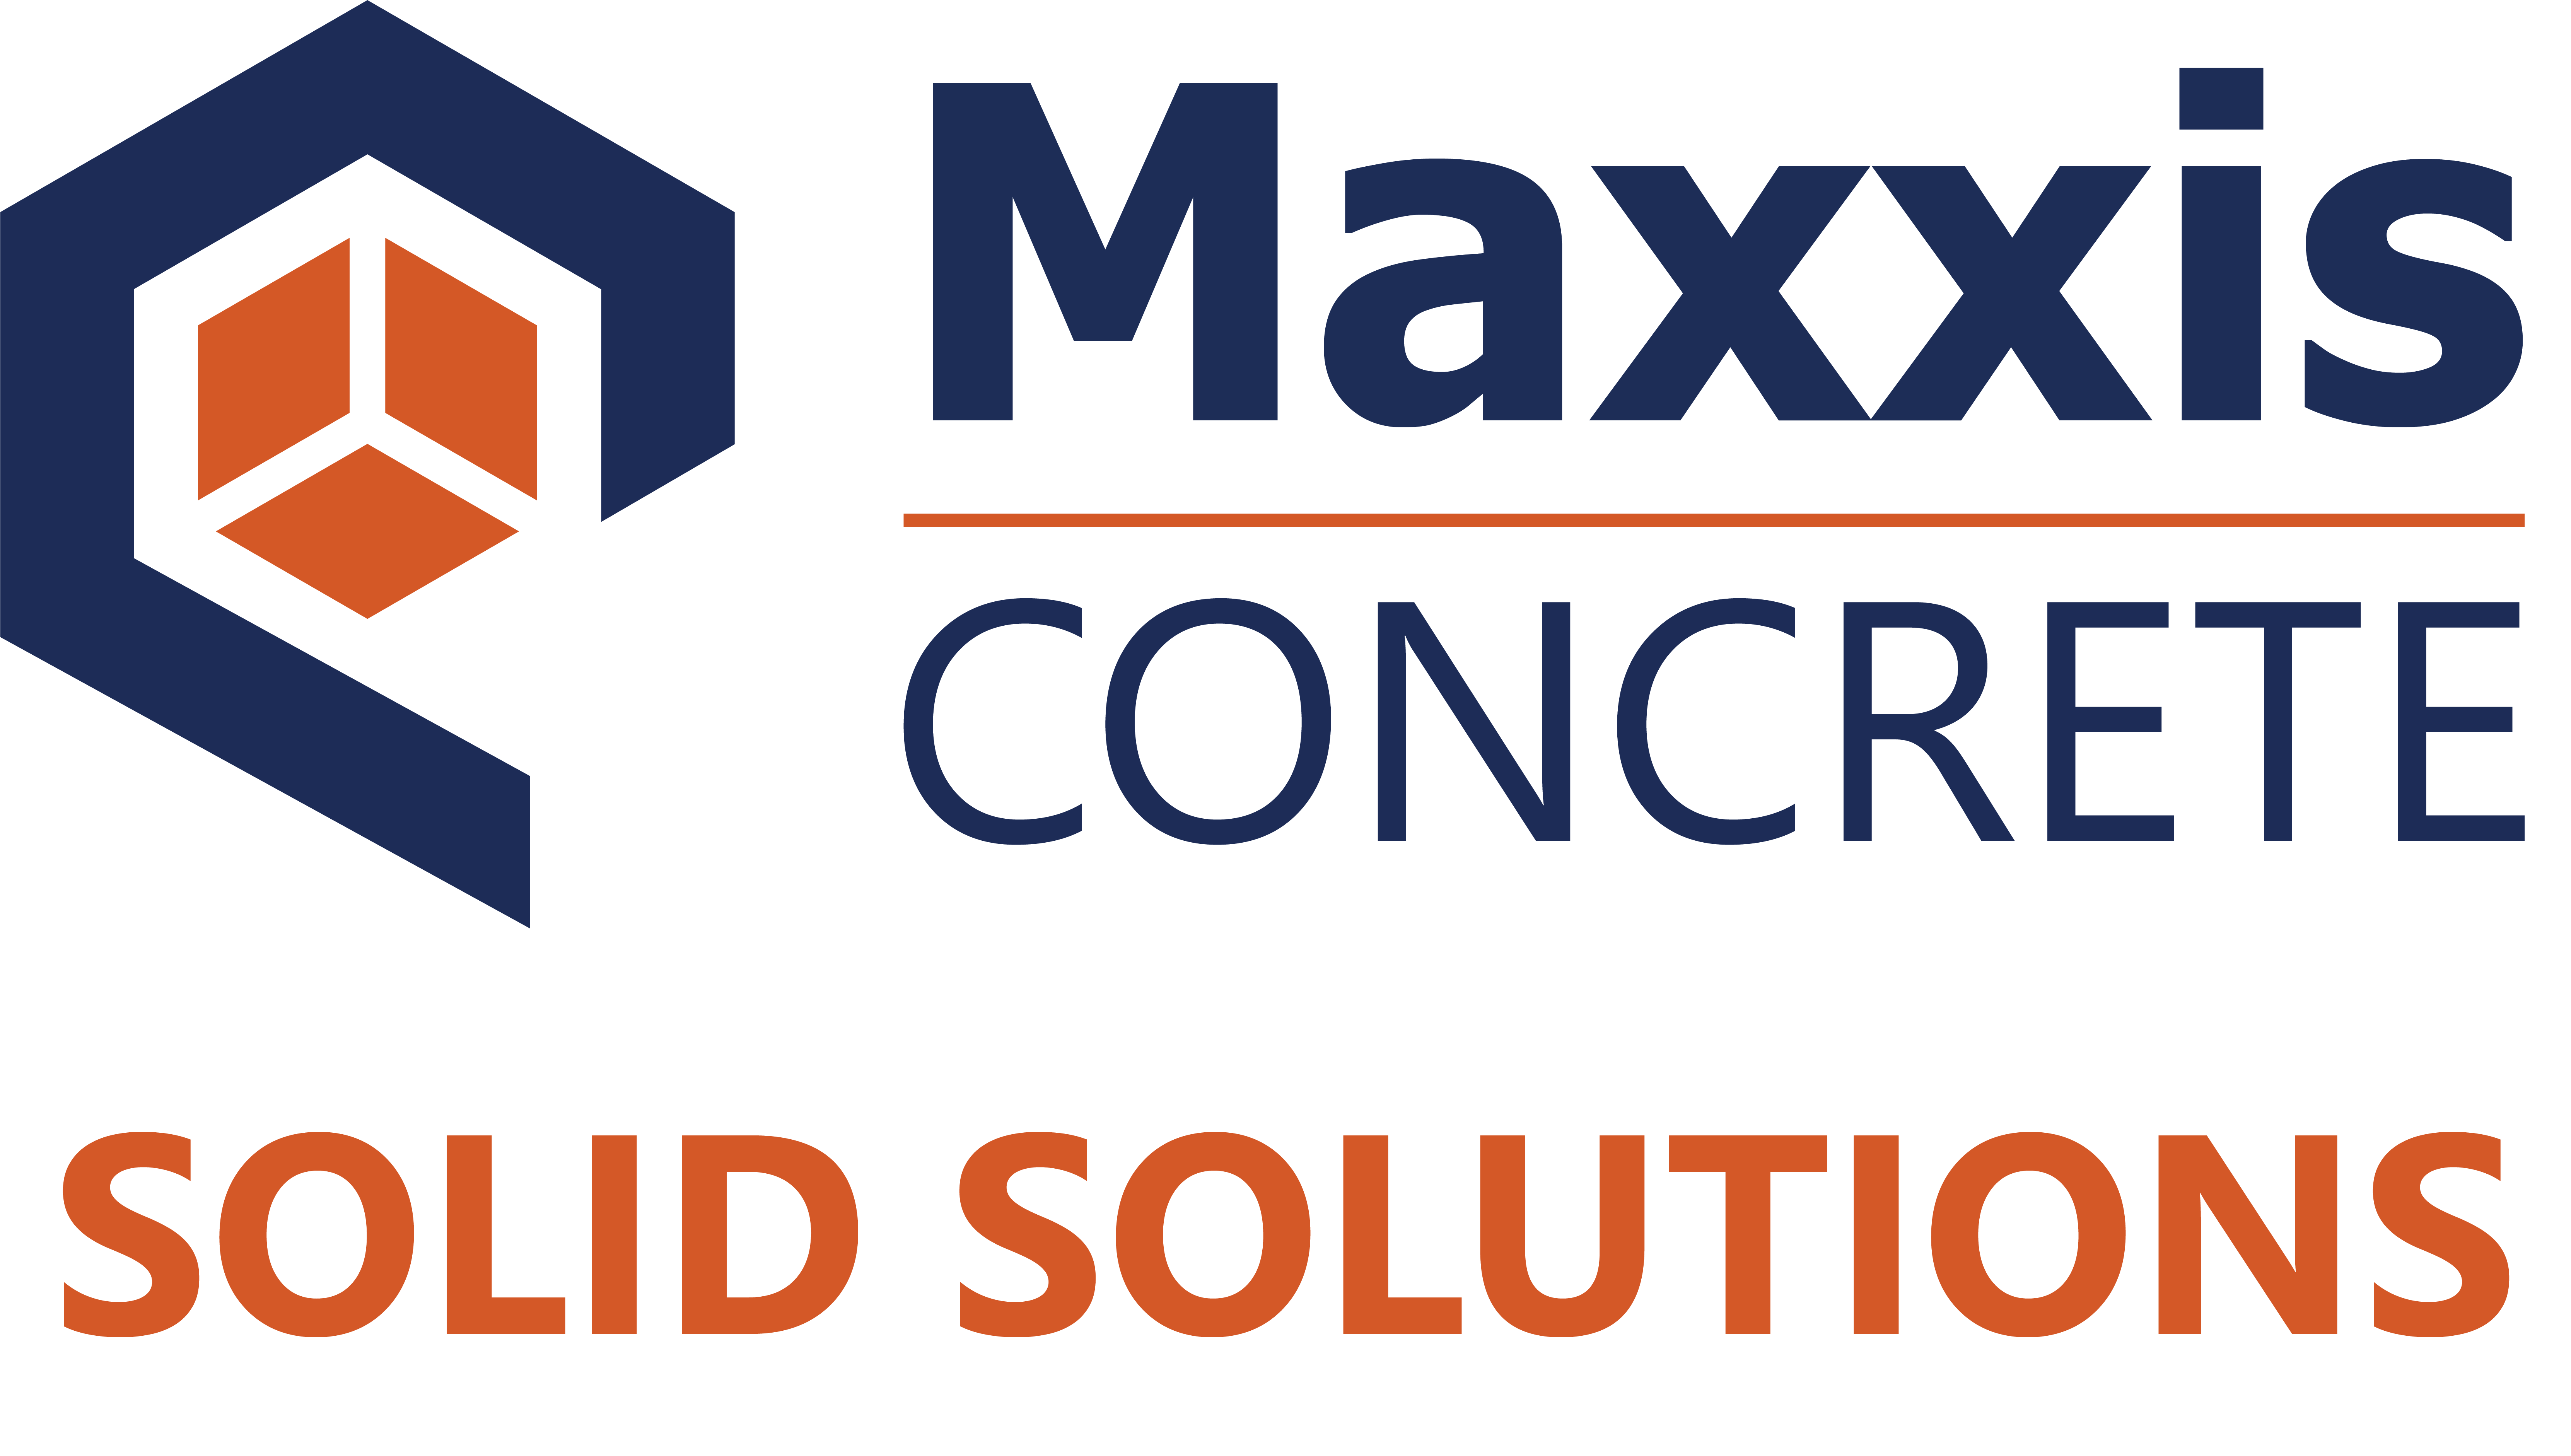 maxxis concrete